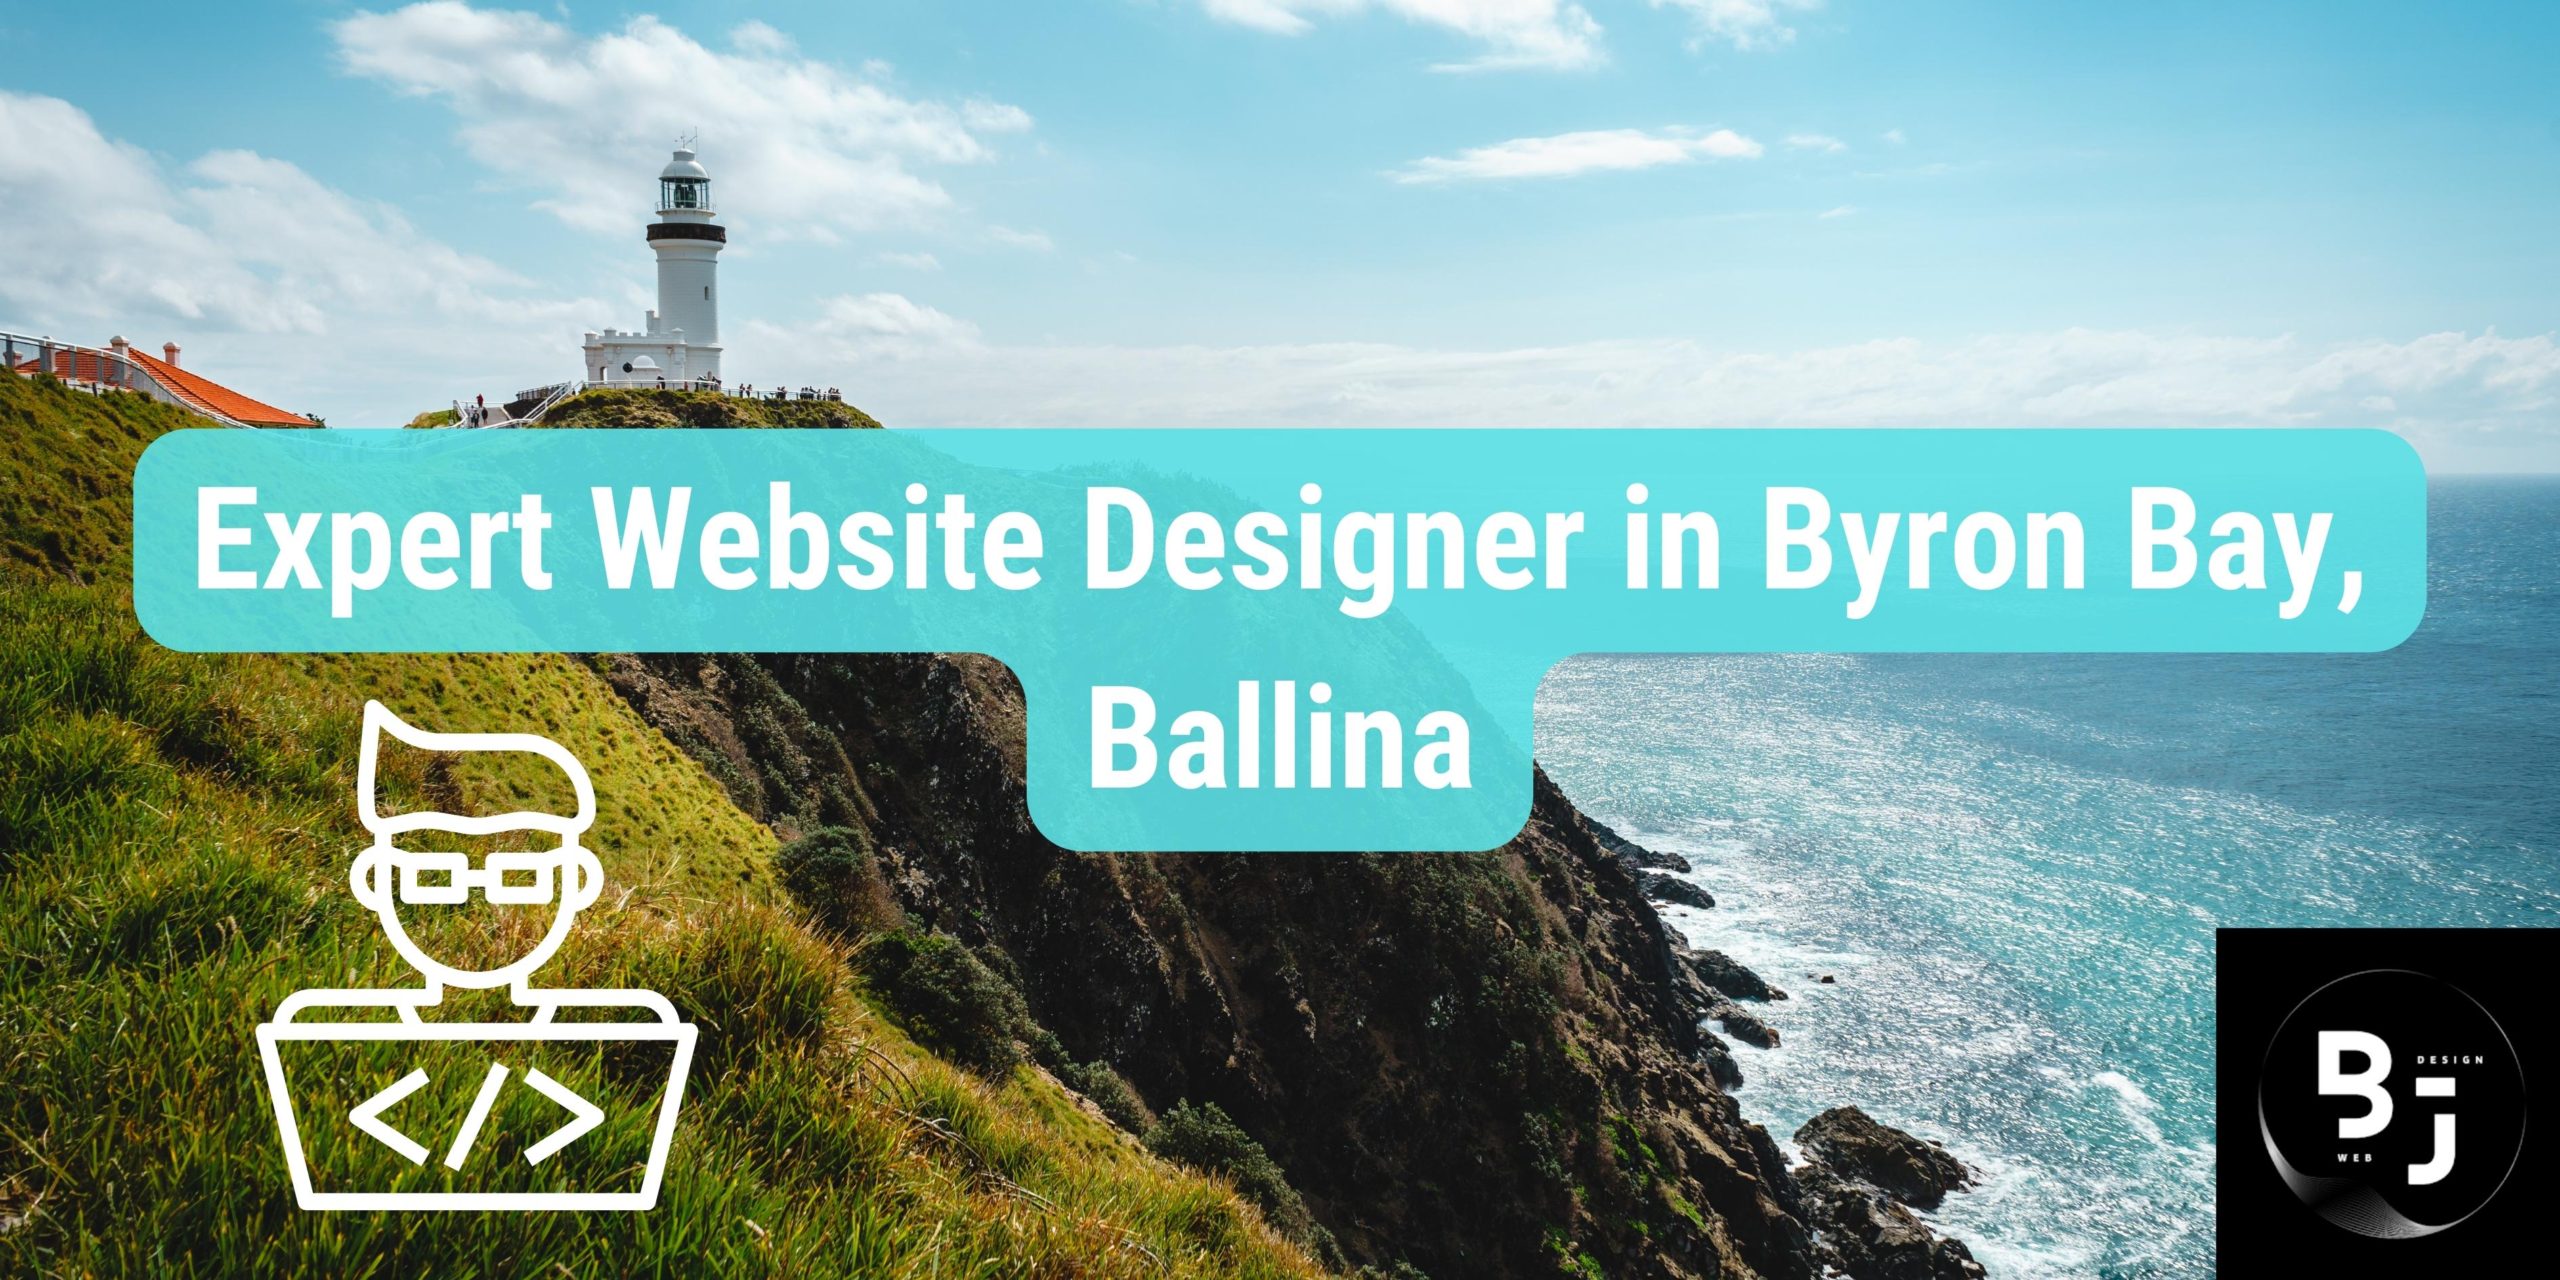 Expert Website Designer in Byron Bay, Ballina - Big J Web Design